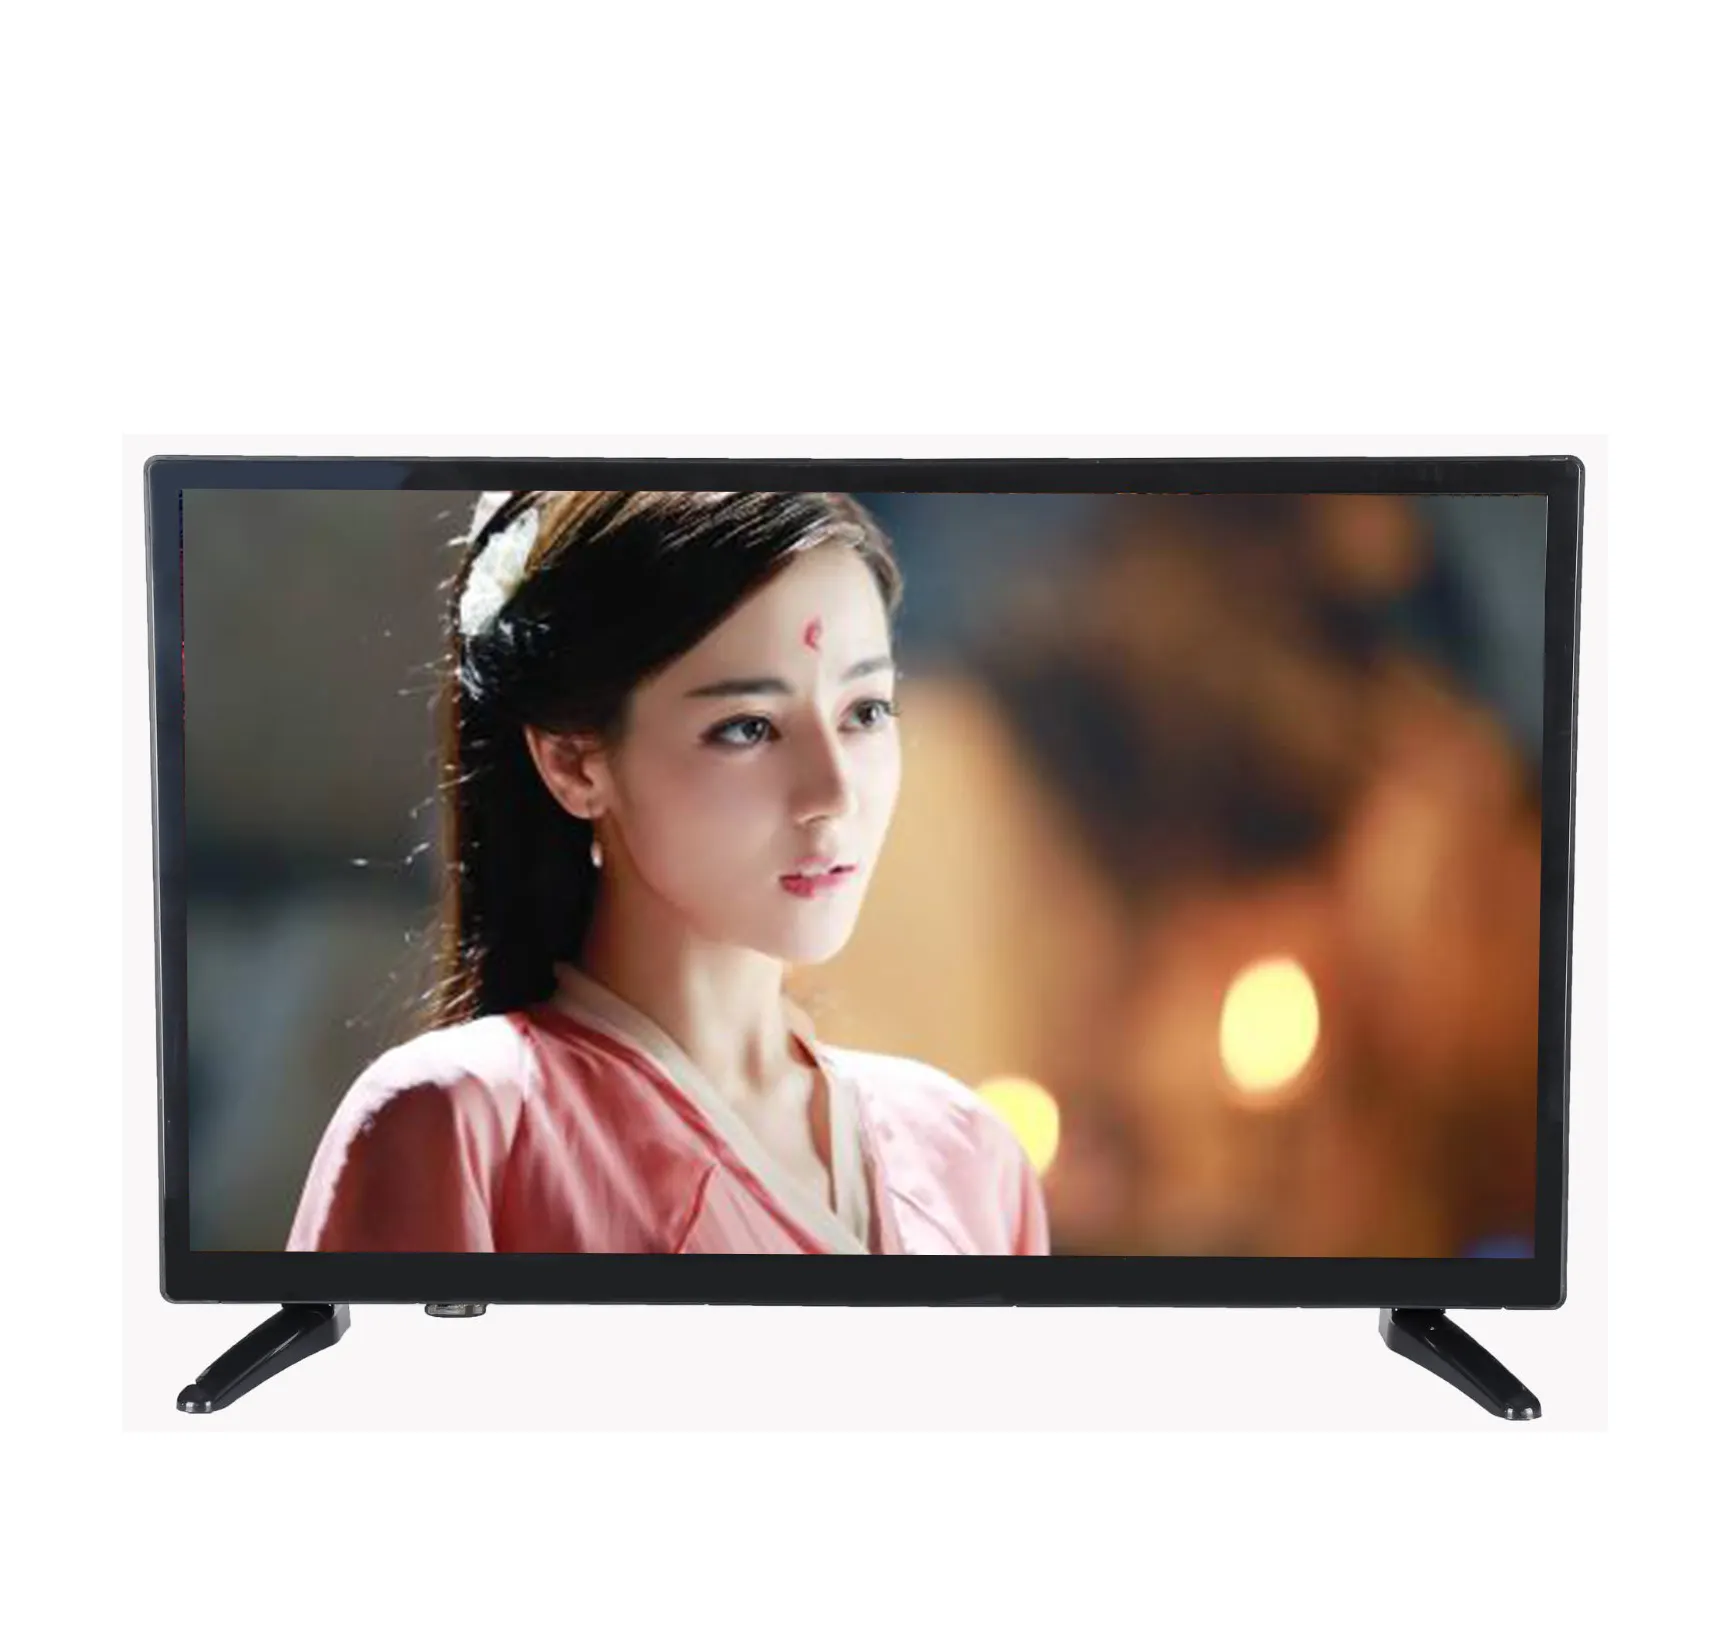 Più economico Della Cina HA CONDOTTO prezzo TV 4k smart TV LED lcd 15 17 19 22 26 televisore led